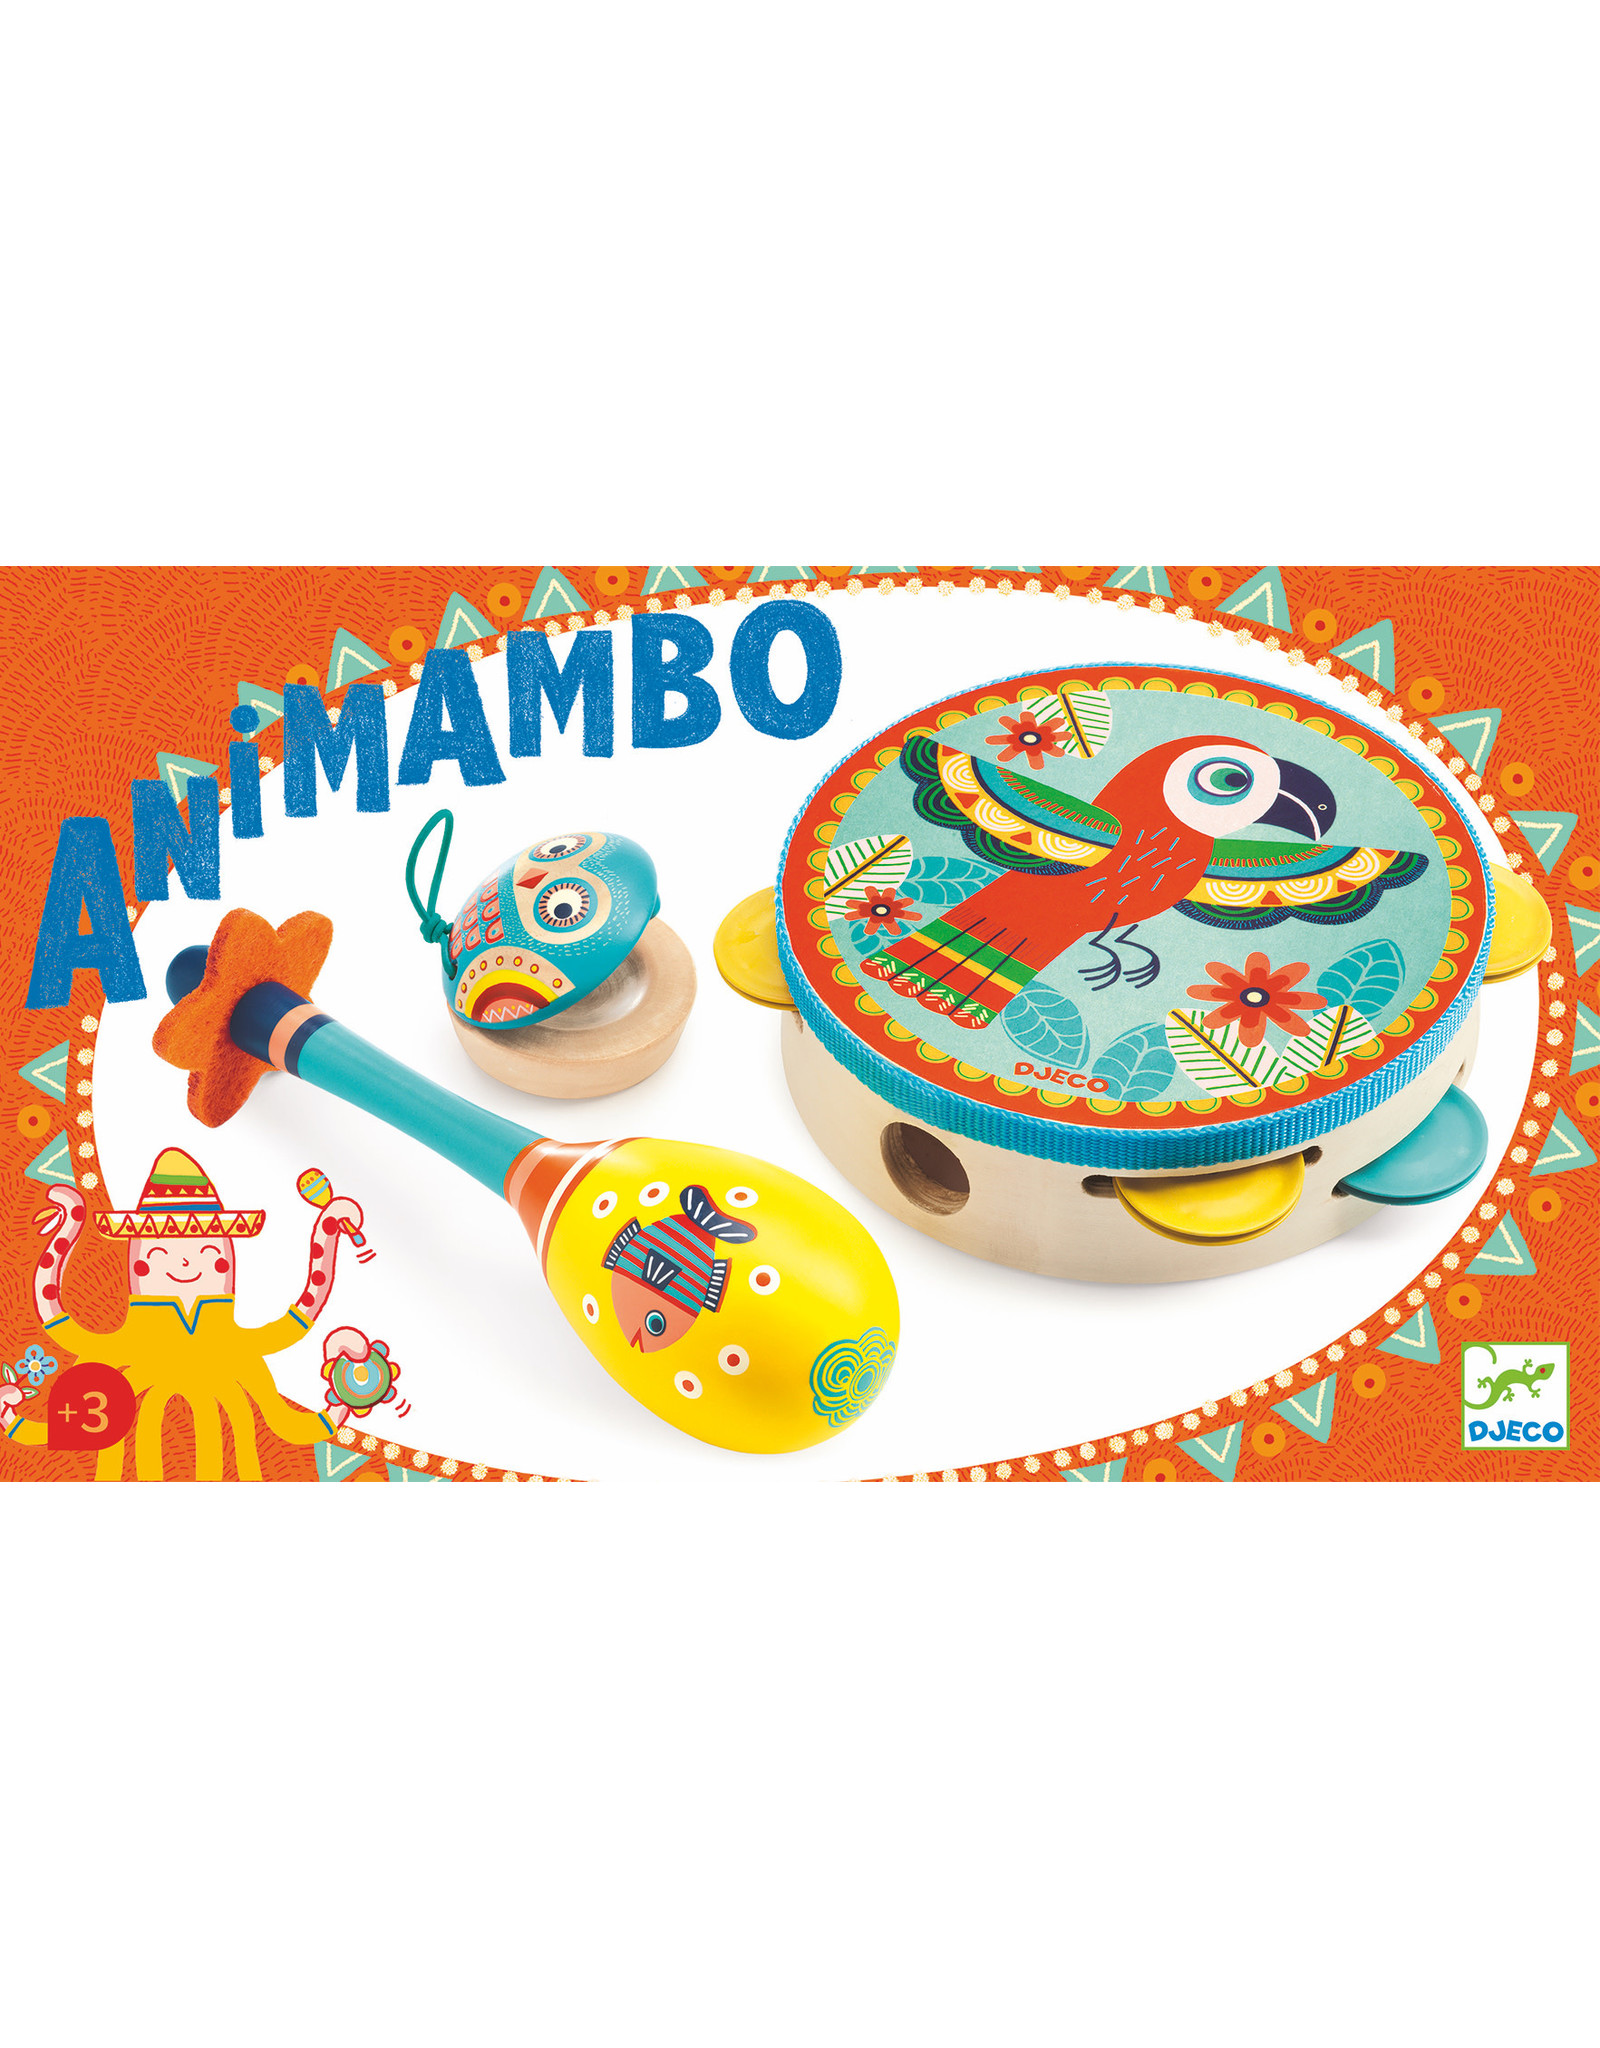 Djeco Animambo Tambourine, Maraca, Castanet Musical Instrument Set